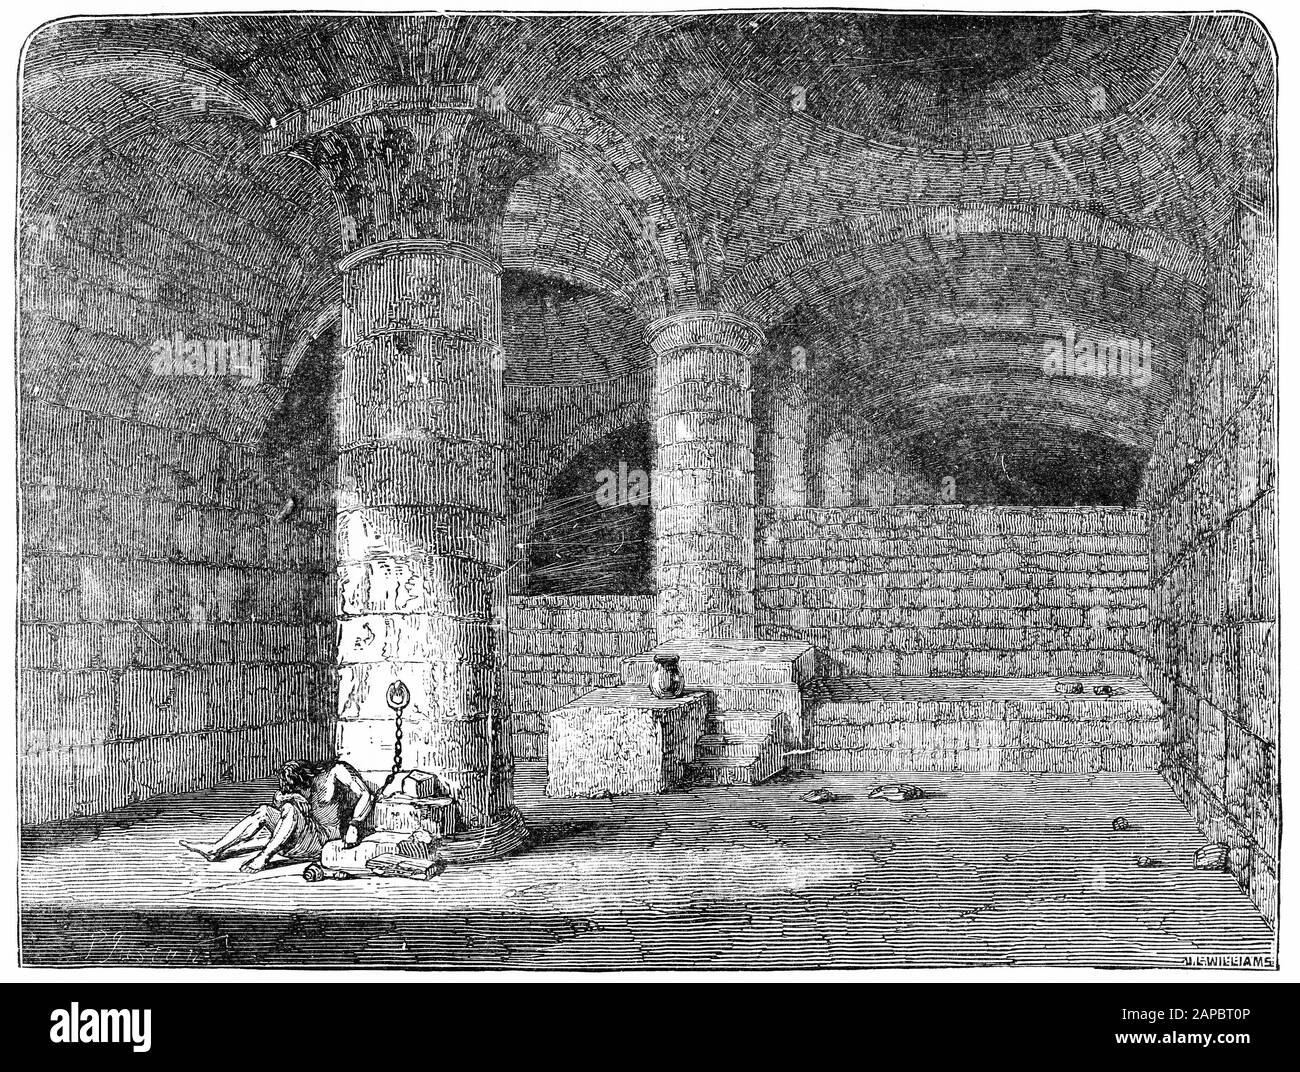 Gravure du vestibule de l'approche sud du temple de Jérusalem, connu sous le nom de la porte d'Huldah, par laquelle le roi Salomon a passé comme il est allé à la maison du seigneur (2 chronique 9:4) Banque D'Images